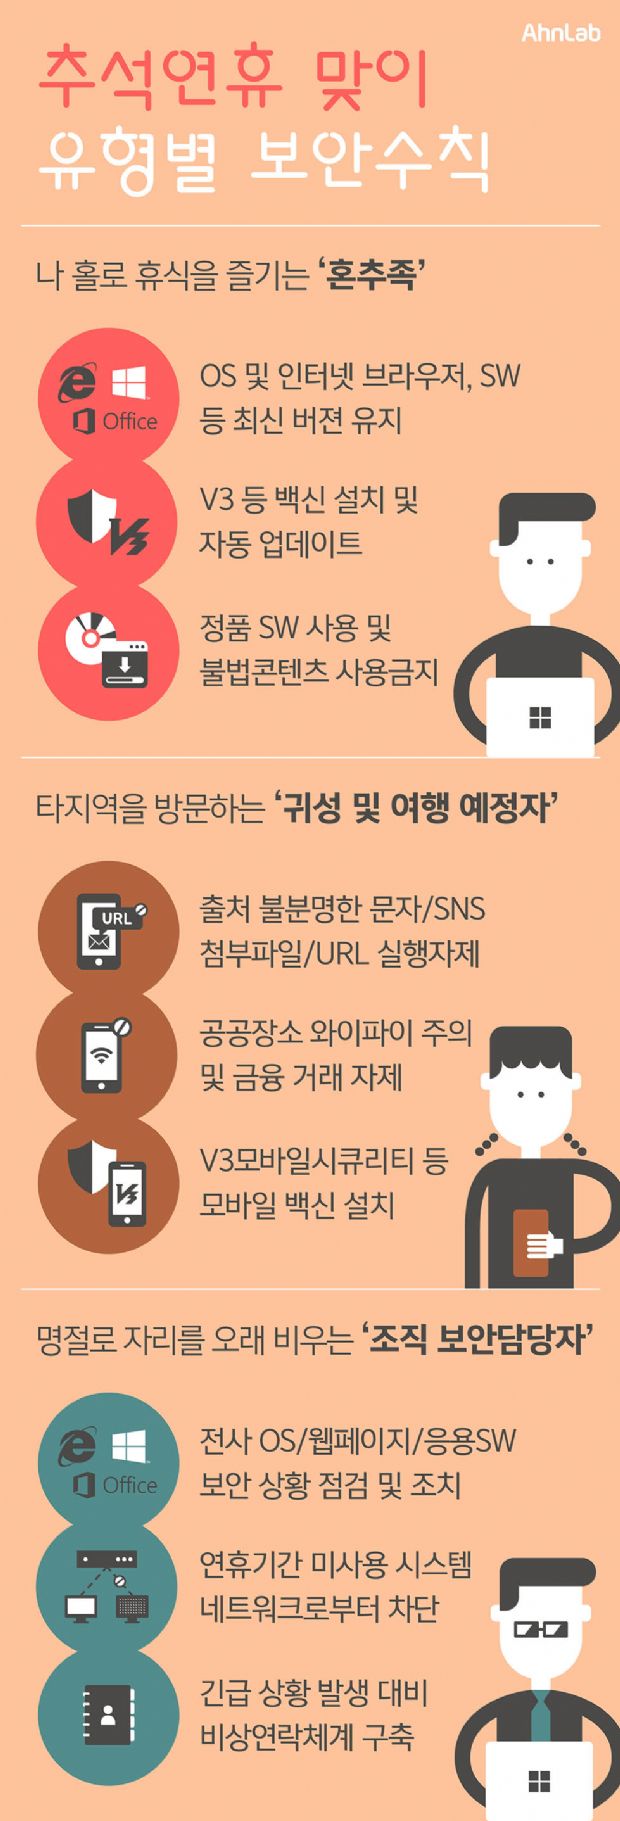 안랩, '추석맞이 유형별 보안 수칙' 발표